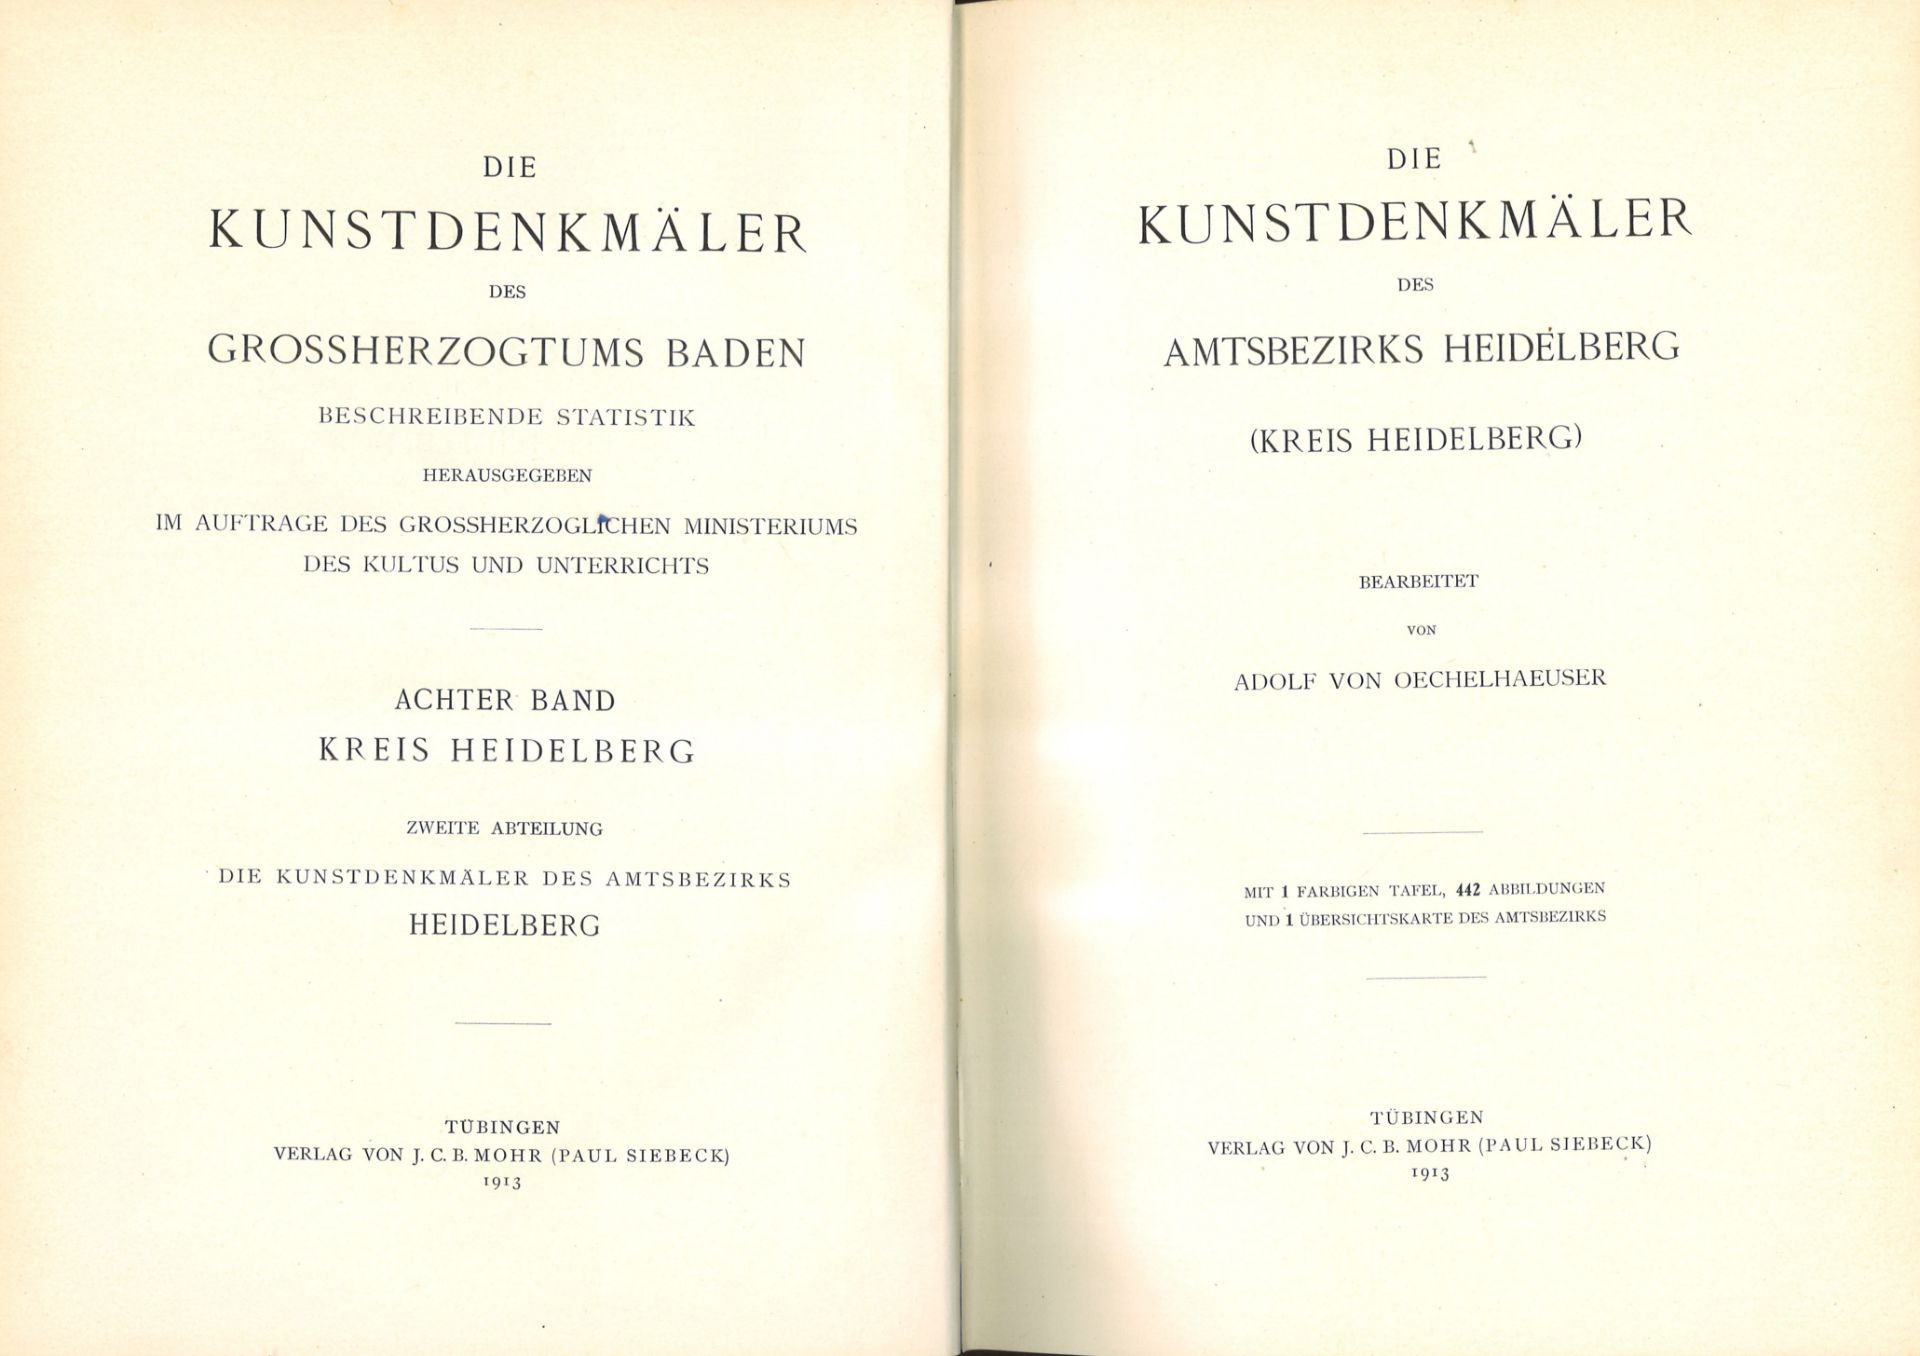 Die Kunstdenkmäler des Grossherzogtums Baden, Amtsbezirk Heidelberg, Kreis Heidelbeg, von Adolf